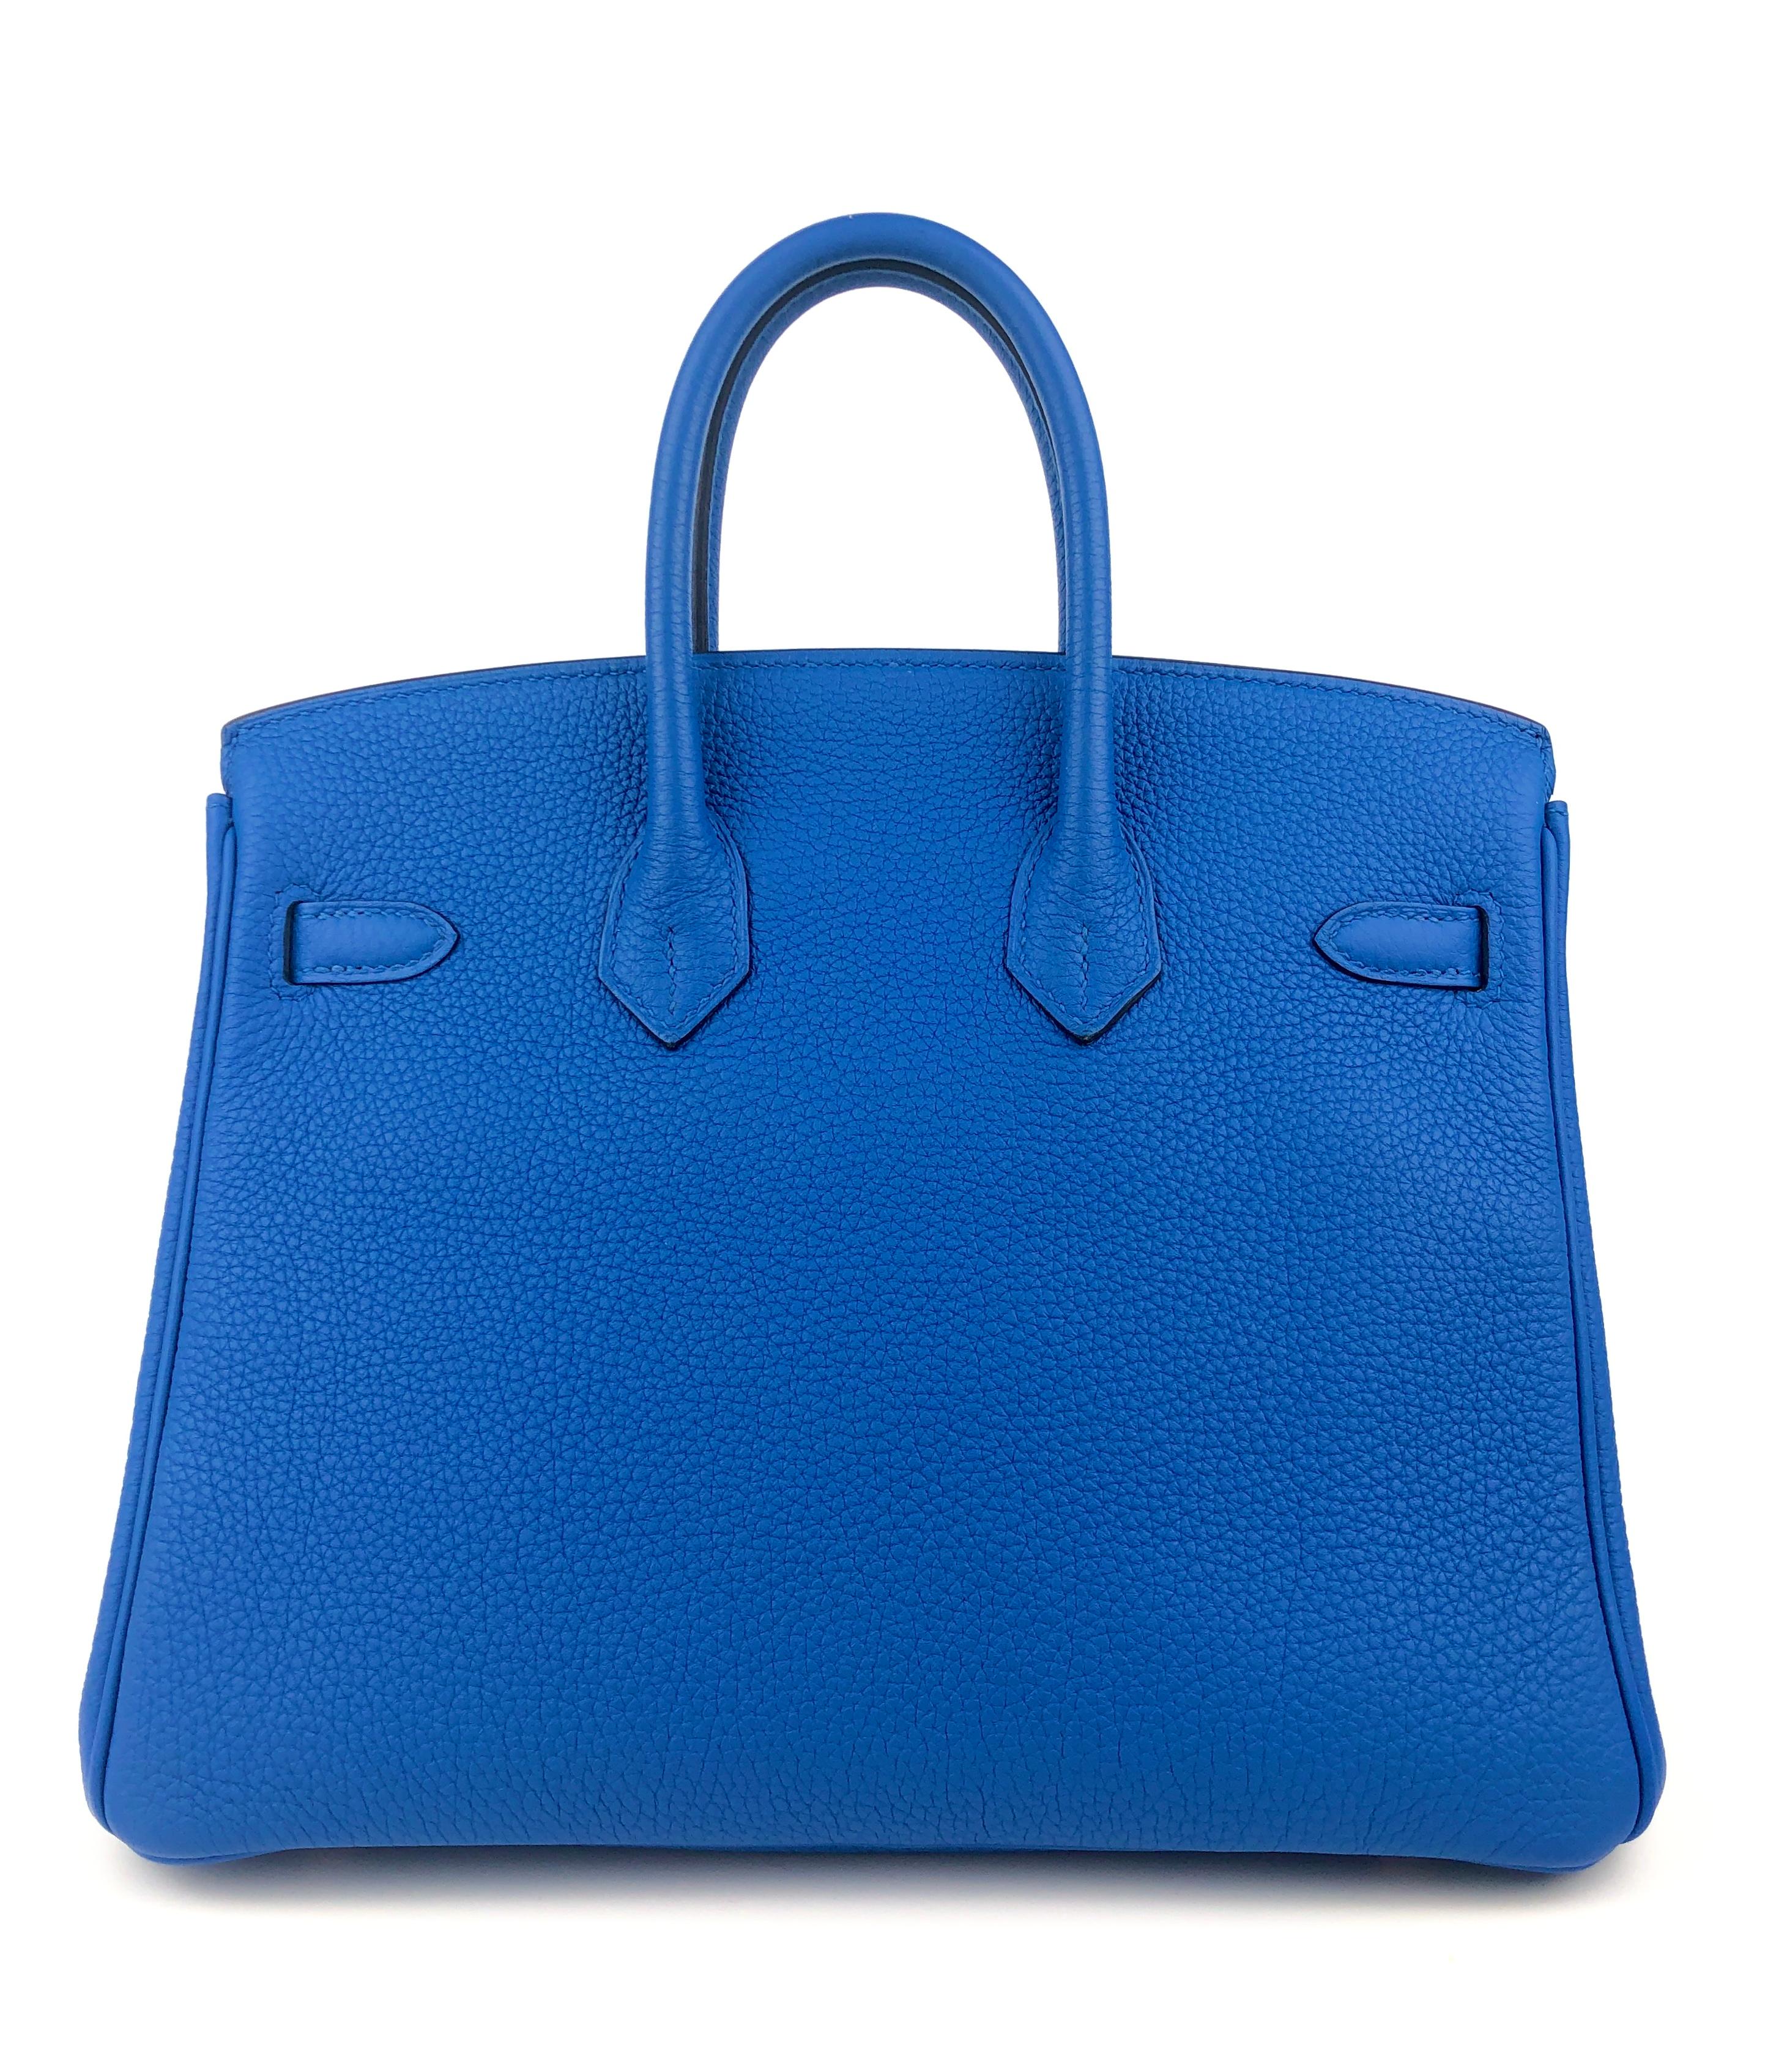 Women's or Men's Hermes Birkin 25 Blue Zellige Togo Leather Handbag Bag Gold Hardware RARE